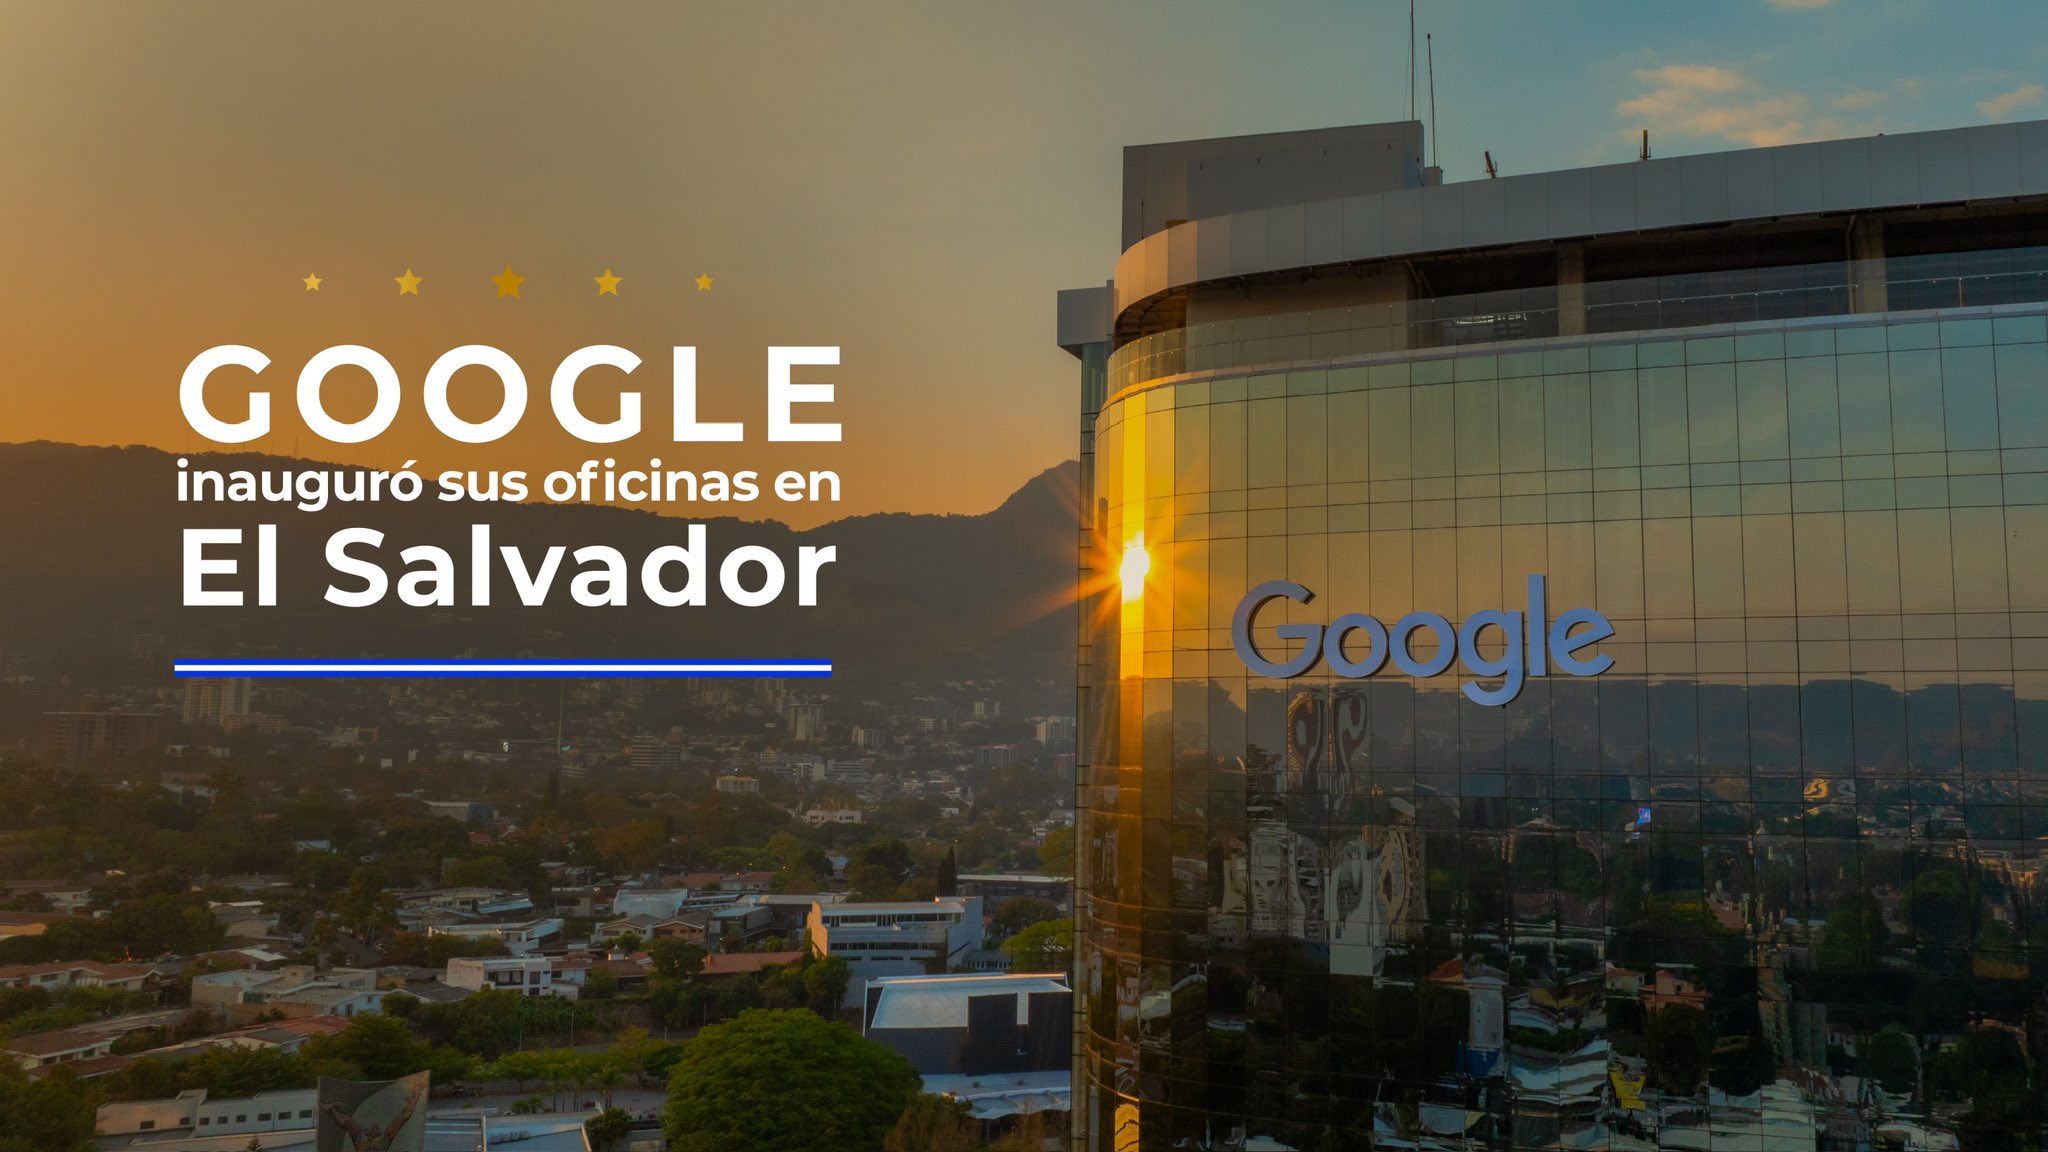 Google llega a El Salvador con crecimiento, innovación, más una donación de $200,000 a emprendedores locales